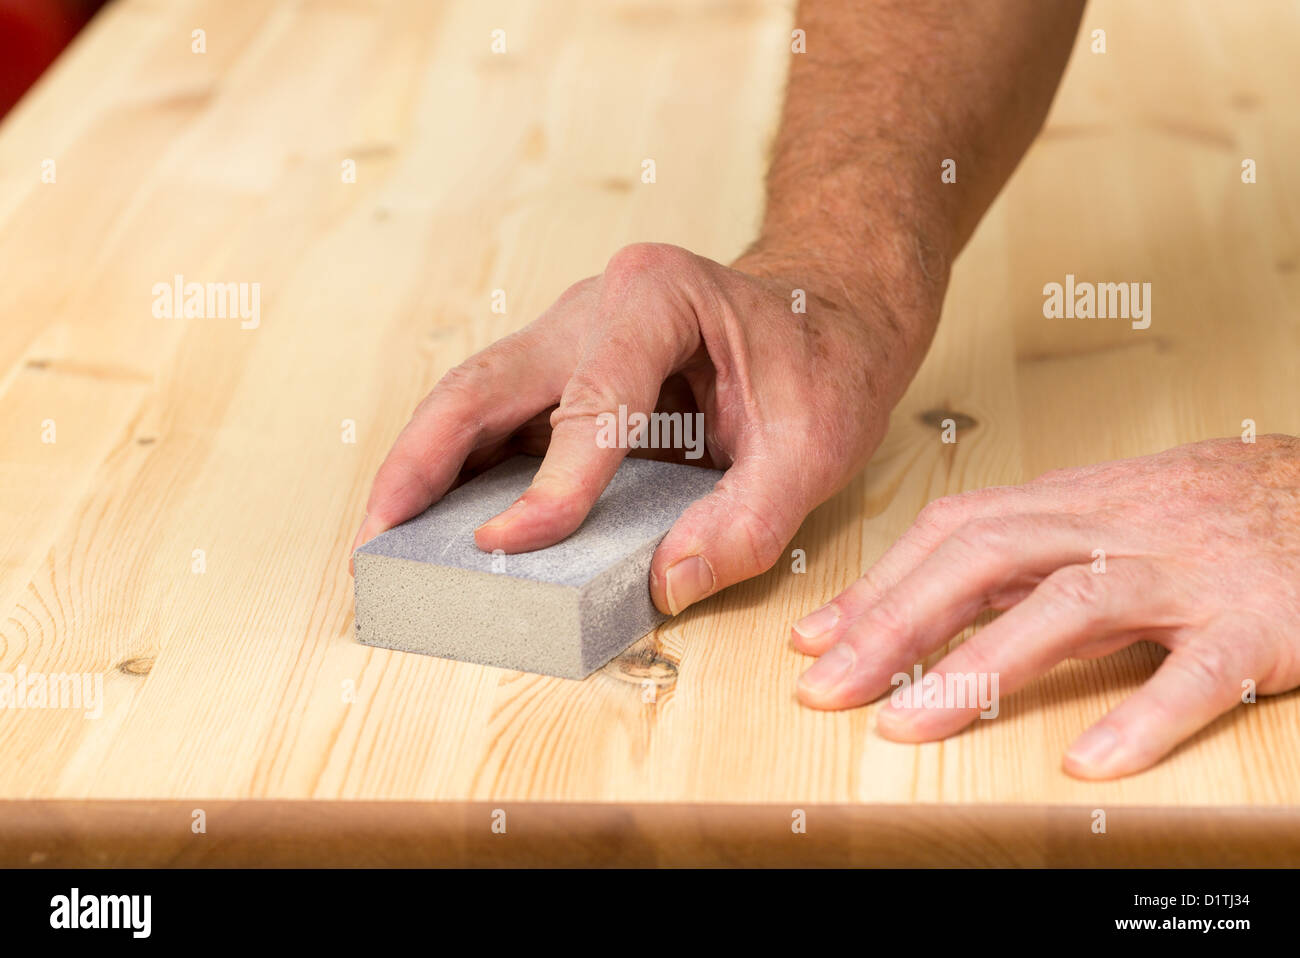 Lijar muebles madera fotografías e imágenes de alta resolución - Alamy